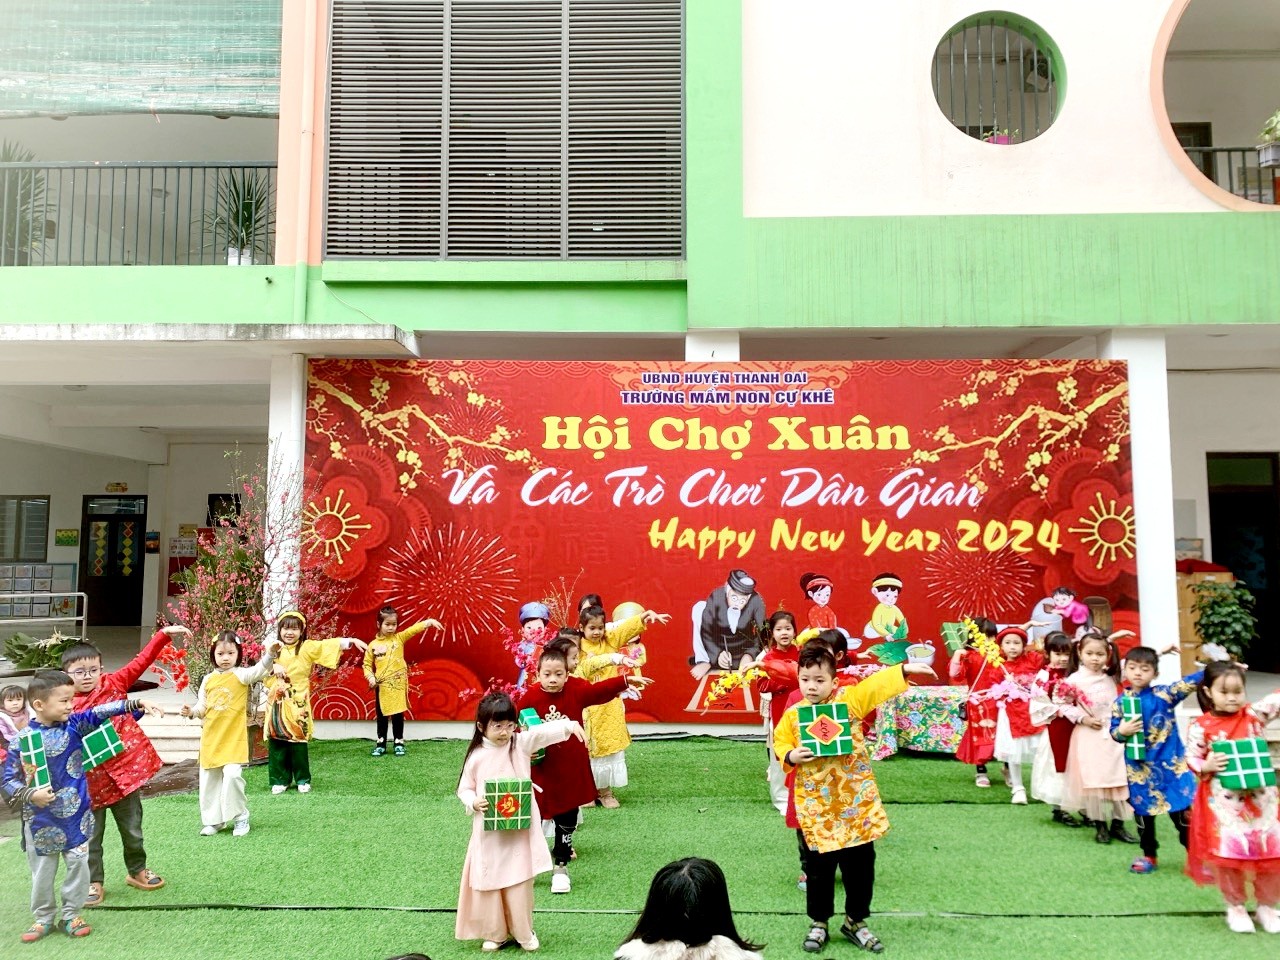 Trường Mầm non Cự Khê tổ chức Hội chợ Xuân và các trò chơi dân gian mừng Xuân Giáp Thìn 2024